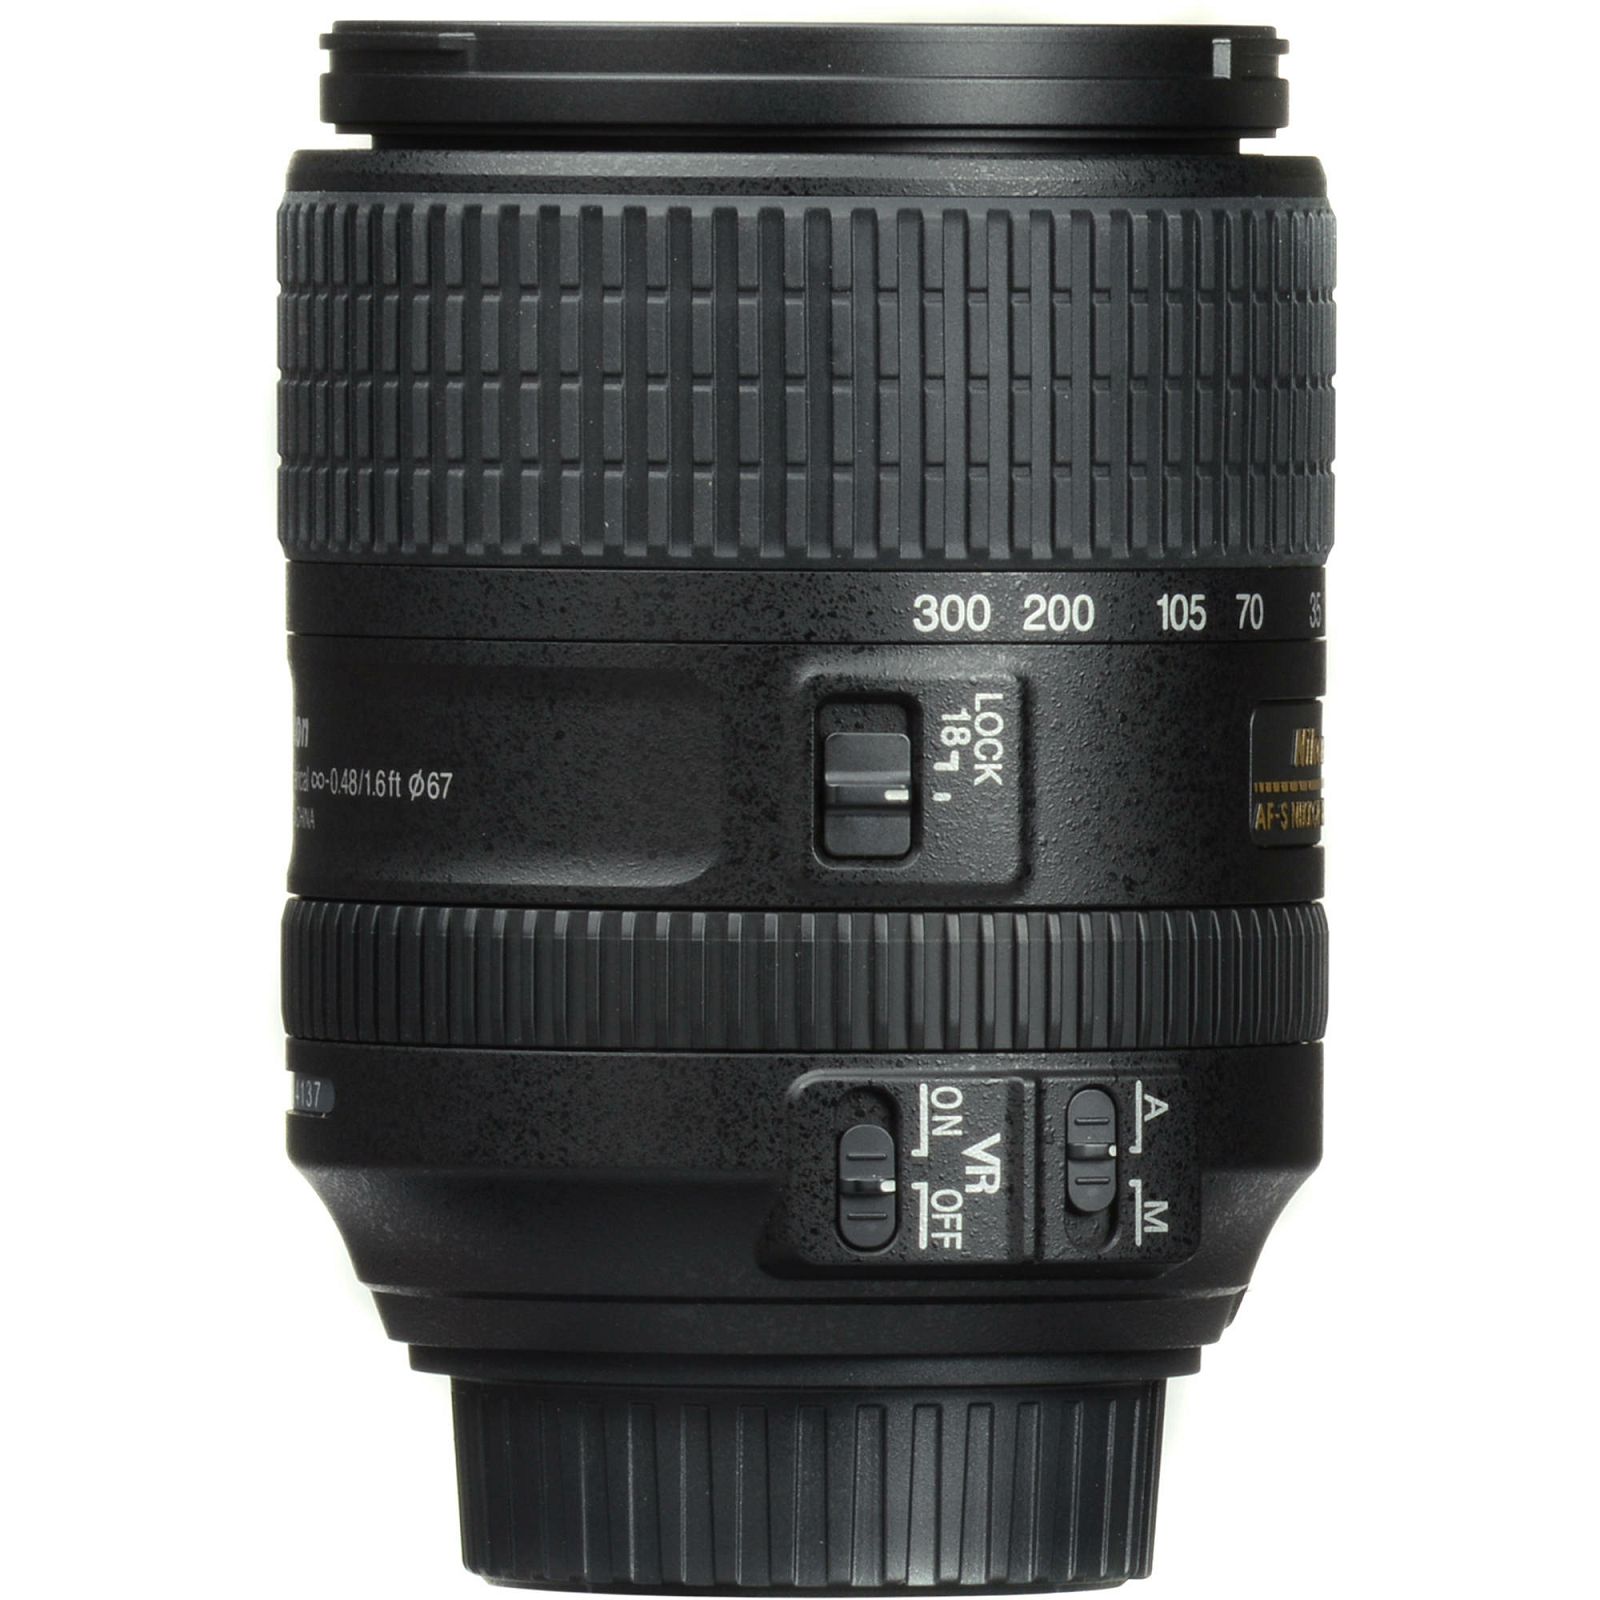 Nikon AF-S 18-300mm f/3.5-6.3G ED VR DX allround objektiv Nikkor 18-300 3.5-6.3 G auto focus zoom lens (JAA821DA)